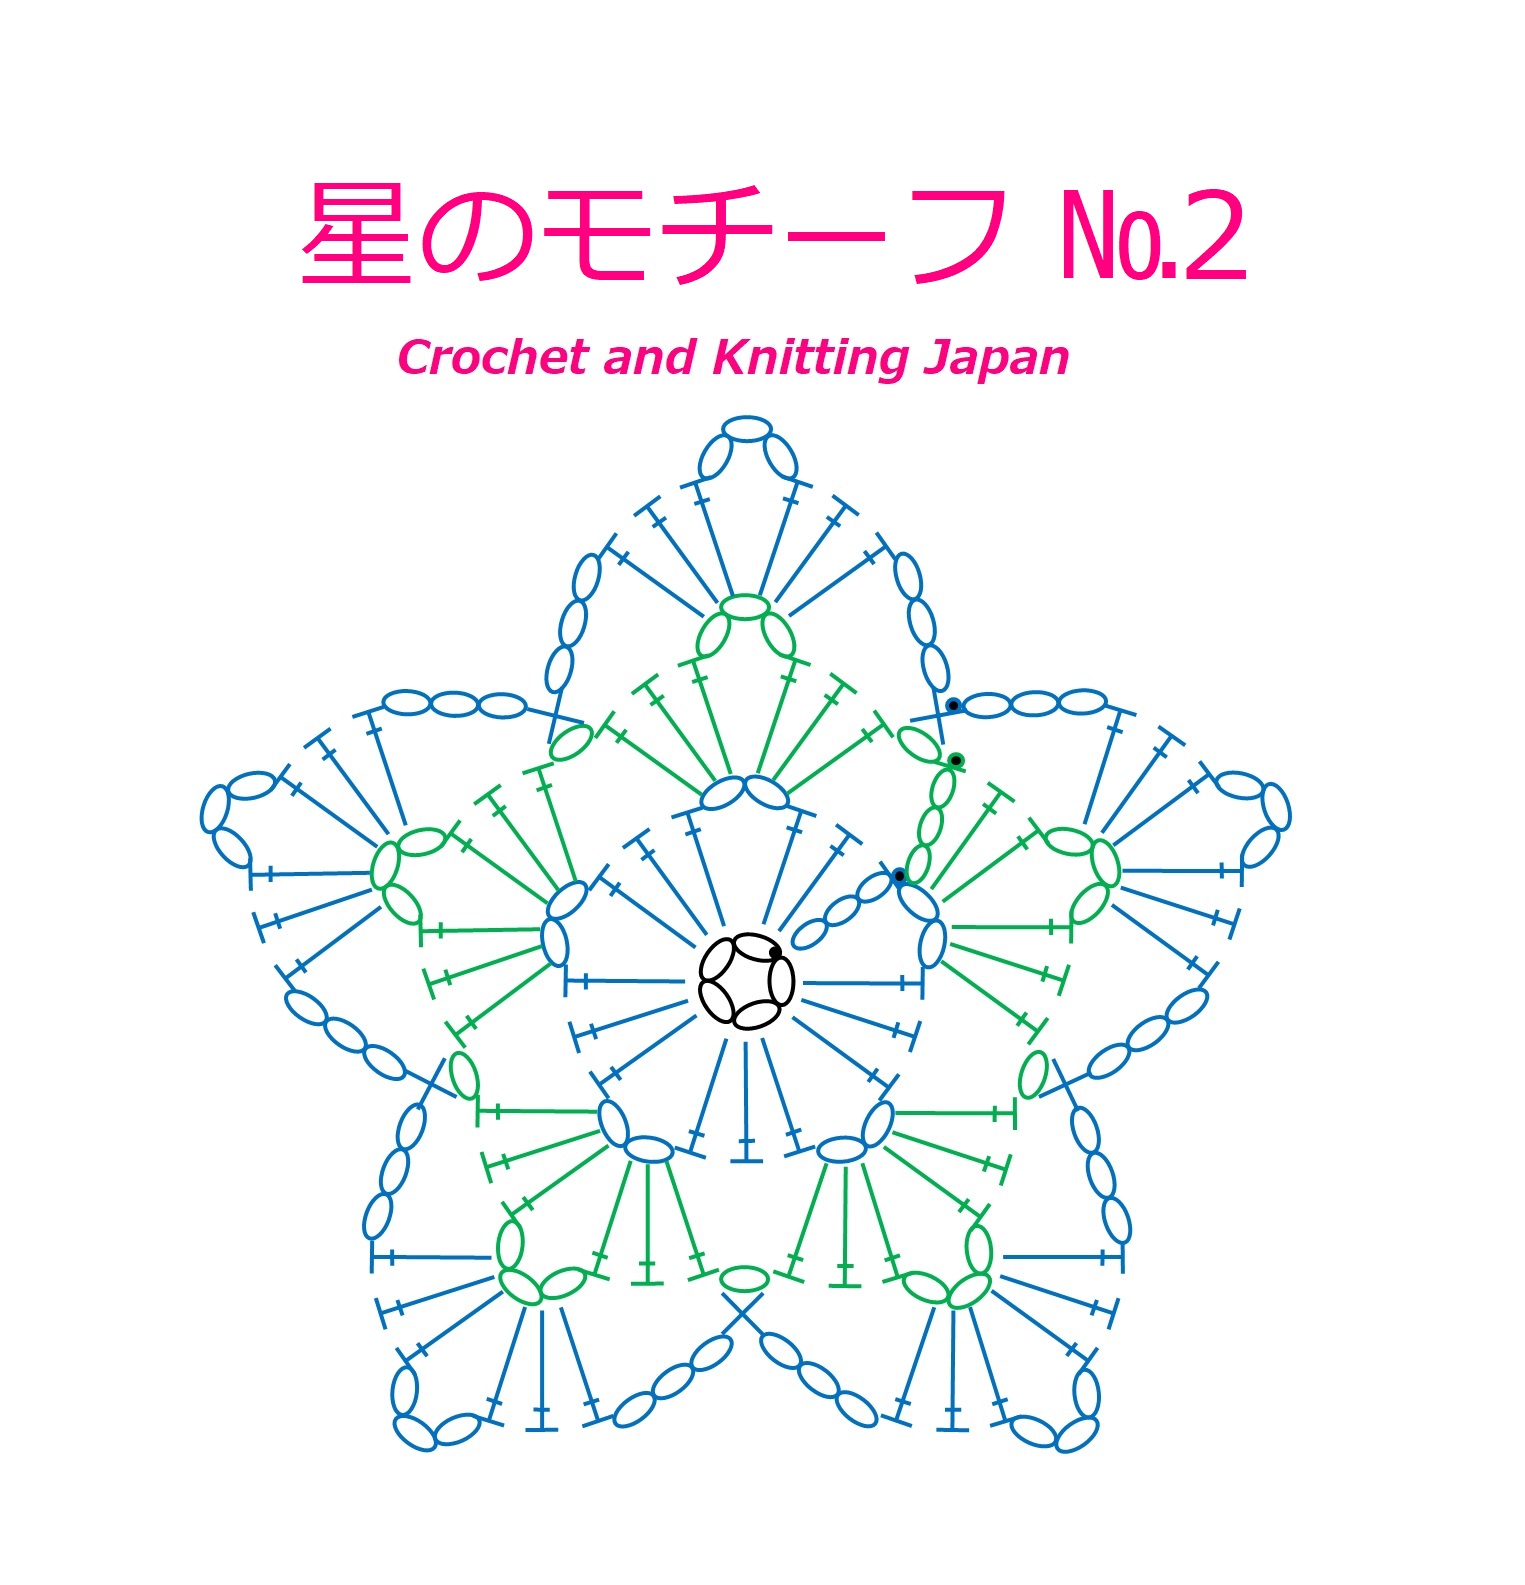 かぎ編み Crochet Japan クロッシェジャパン かぎ針編み 星のモチーフ 2 の編み方 Crochet Star Motif Crochet And Knitting Japan